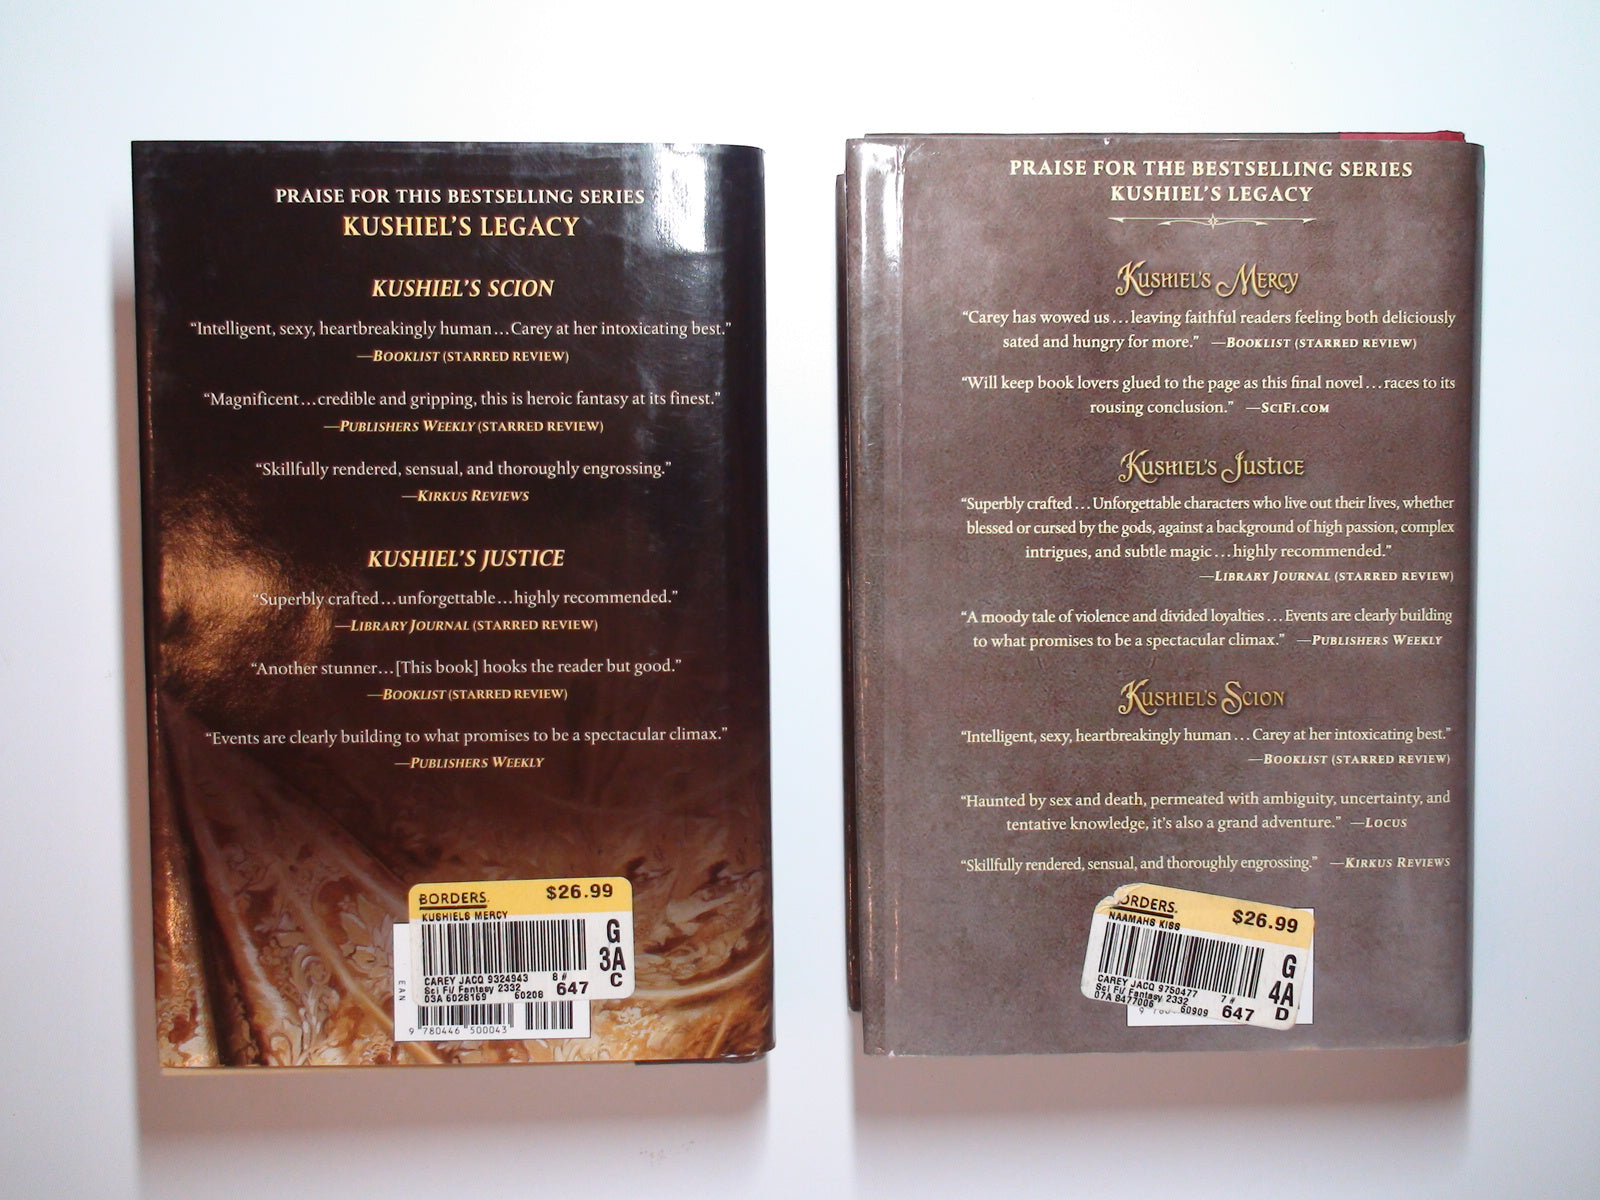 Naamah's Kiss, Kushiel's Mercy, Kushiel Series, Jacqueline Carey, Stated 1st Ed